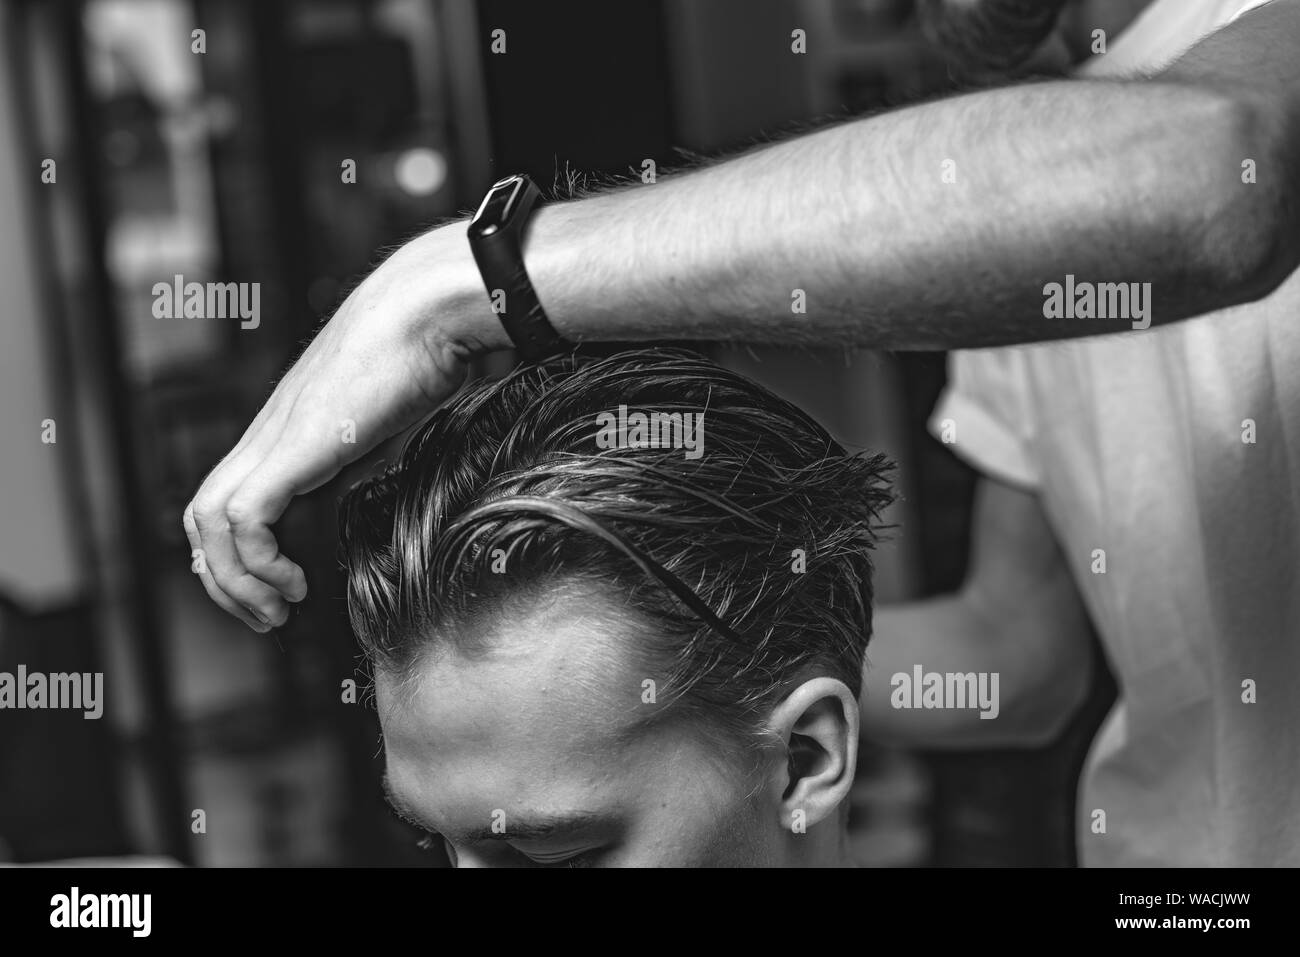 Salon de coiffure fait une coupe élégante et design pour le client dans le salon de beauté. Banque D'Images